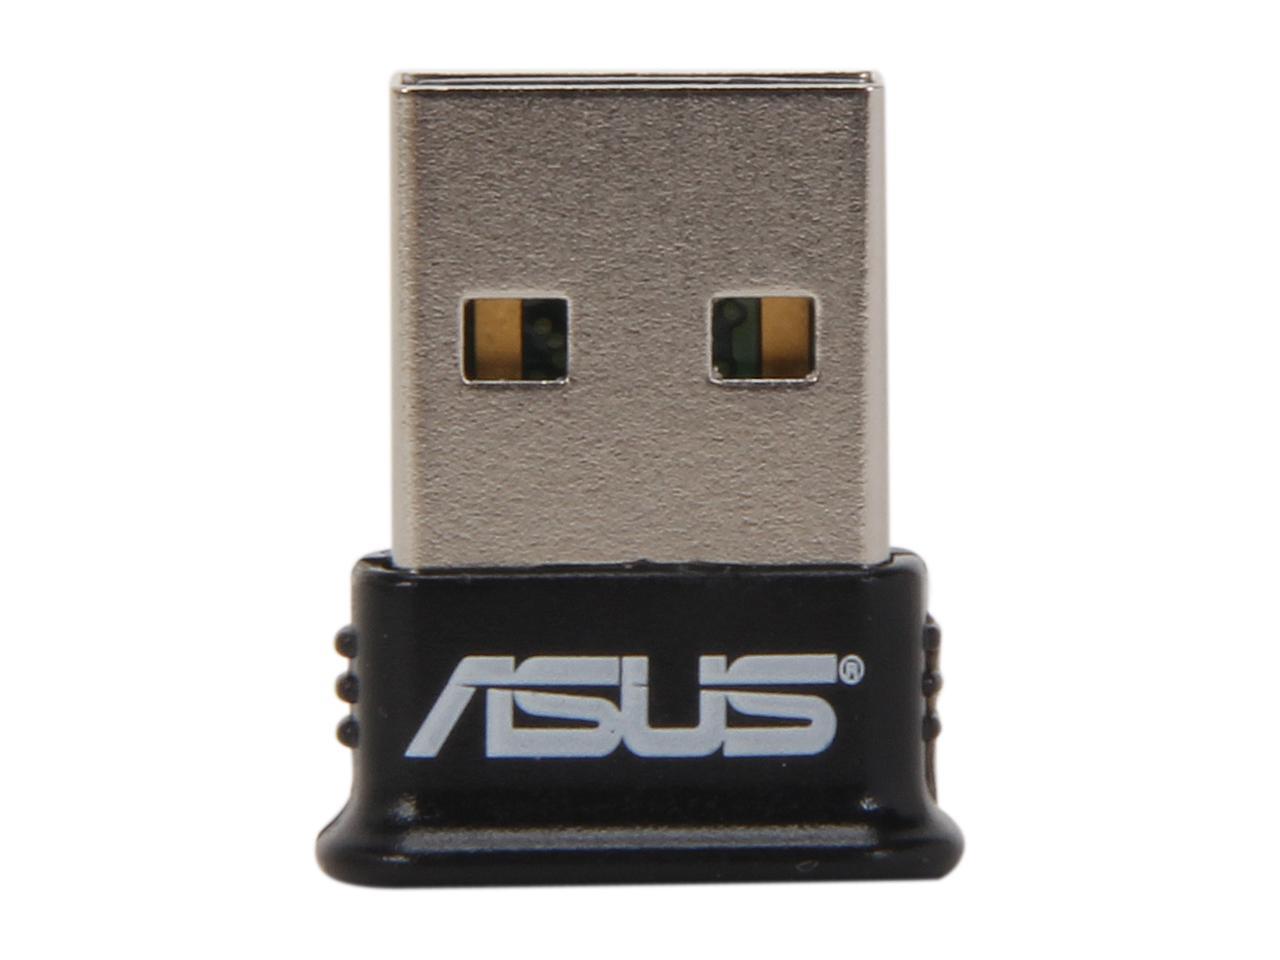 Asus Usb Bt400 Usb Adapter W Bluetooth Dongle Receiver Newegg Com